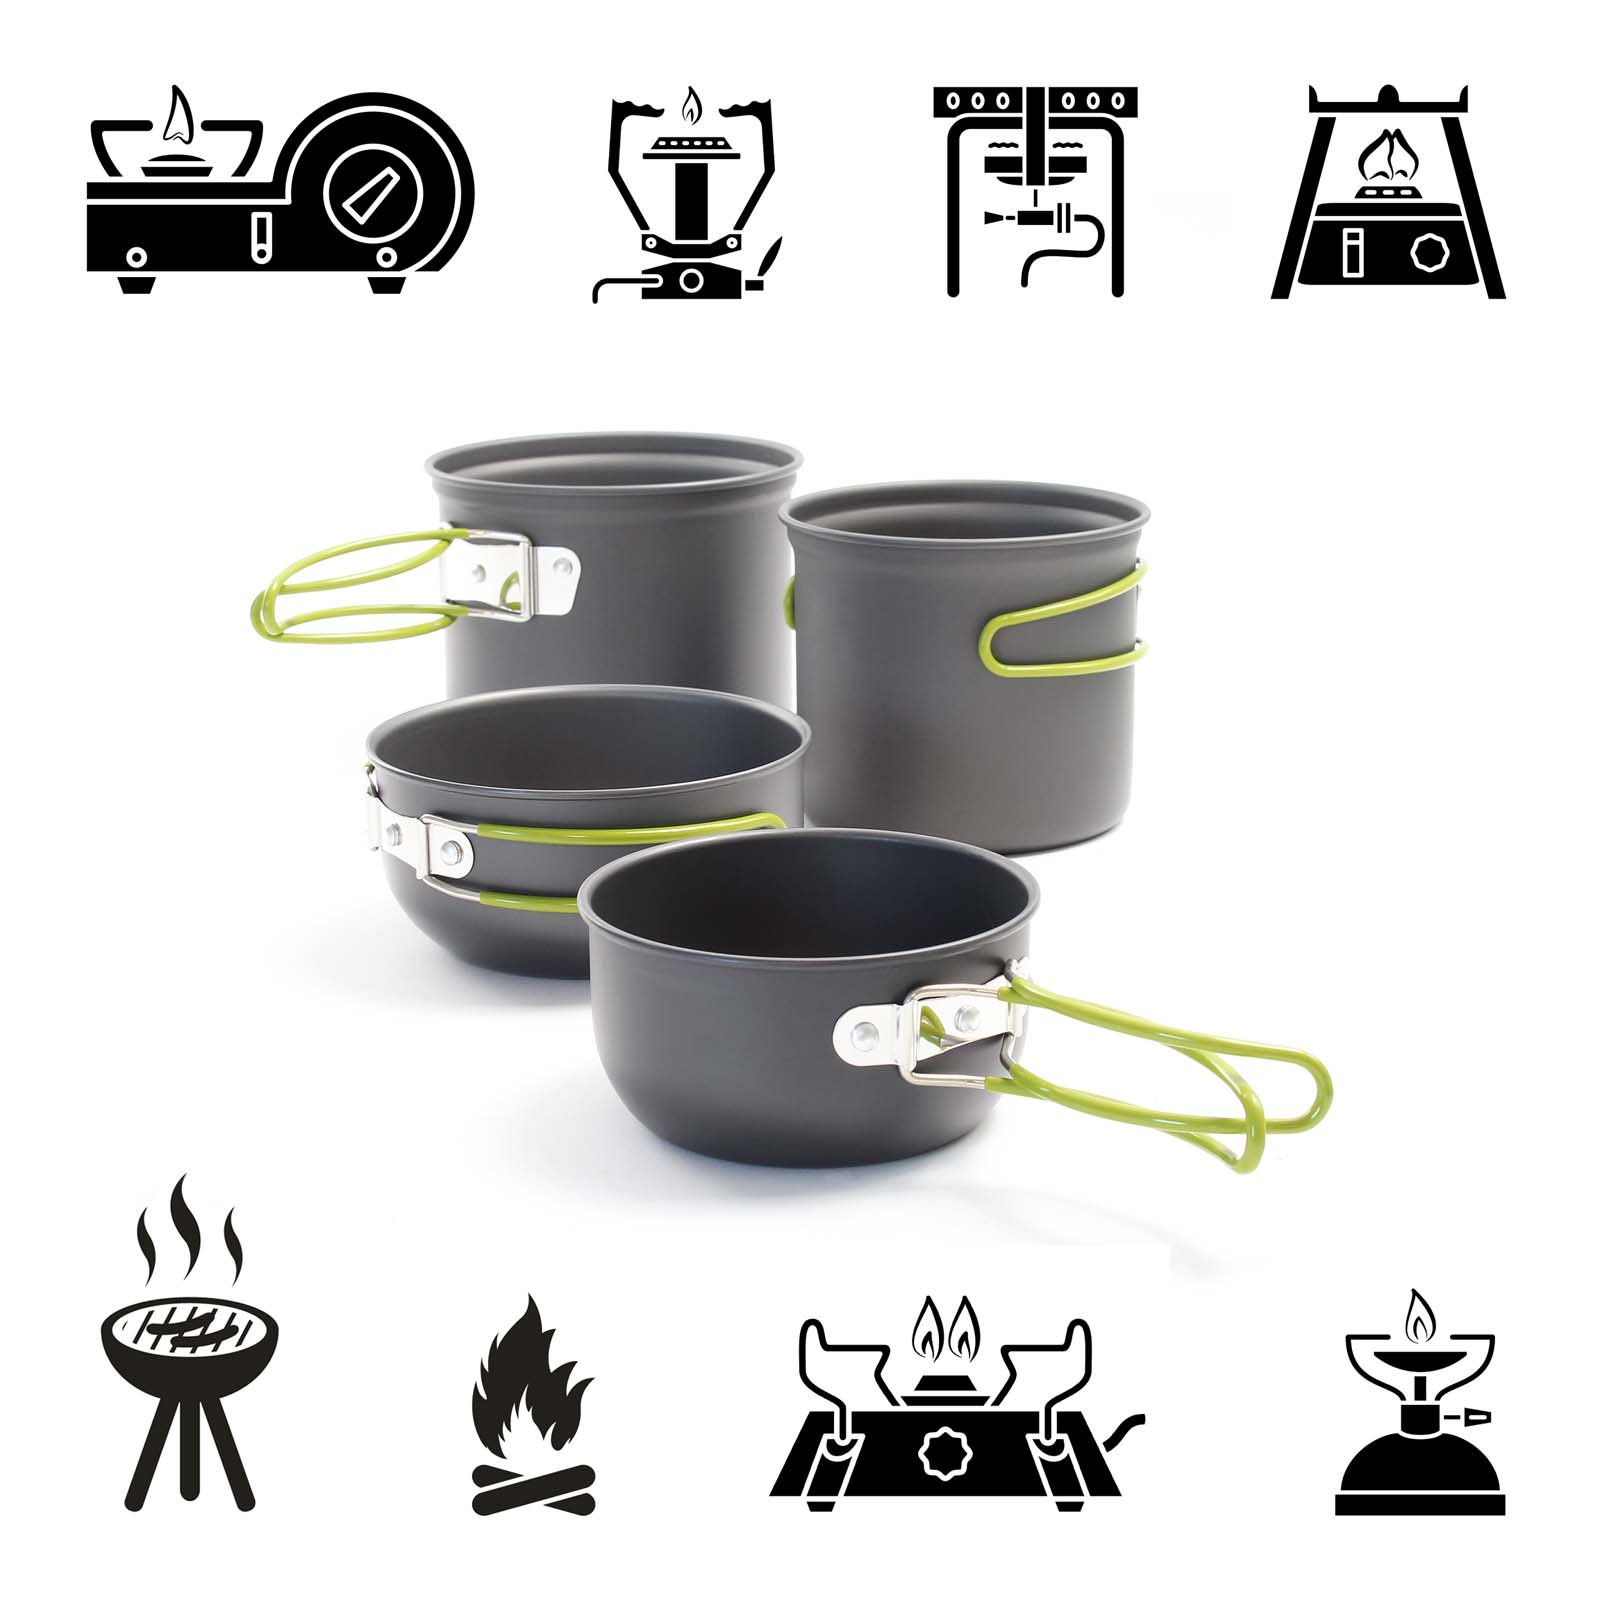 Toboli Set de vaisselle Camping 16 pièces Équipement de cuisine